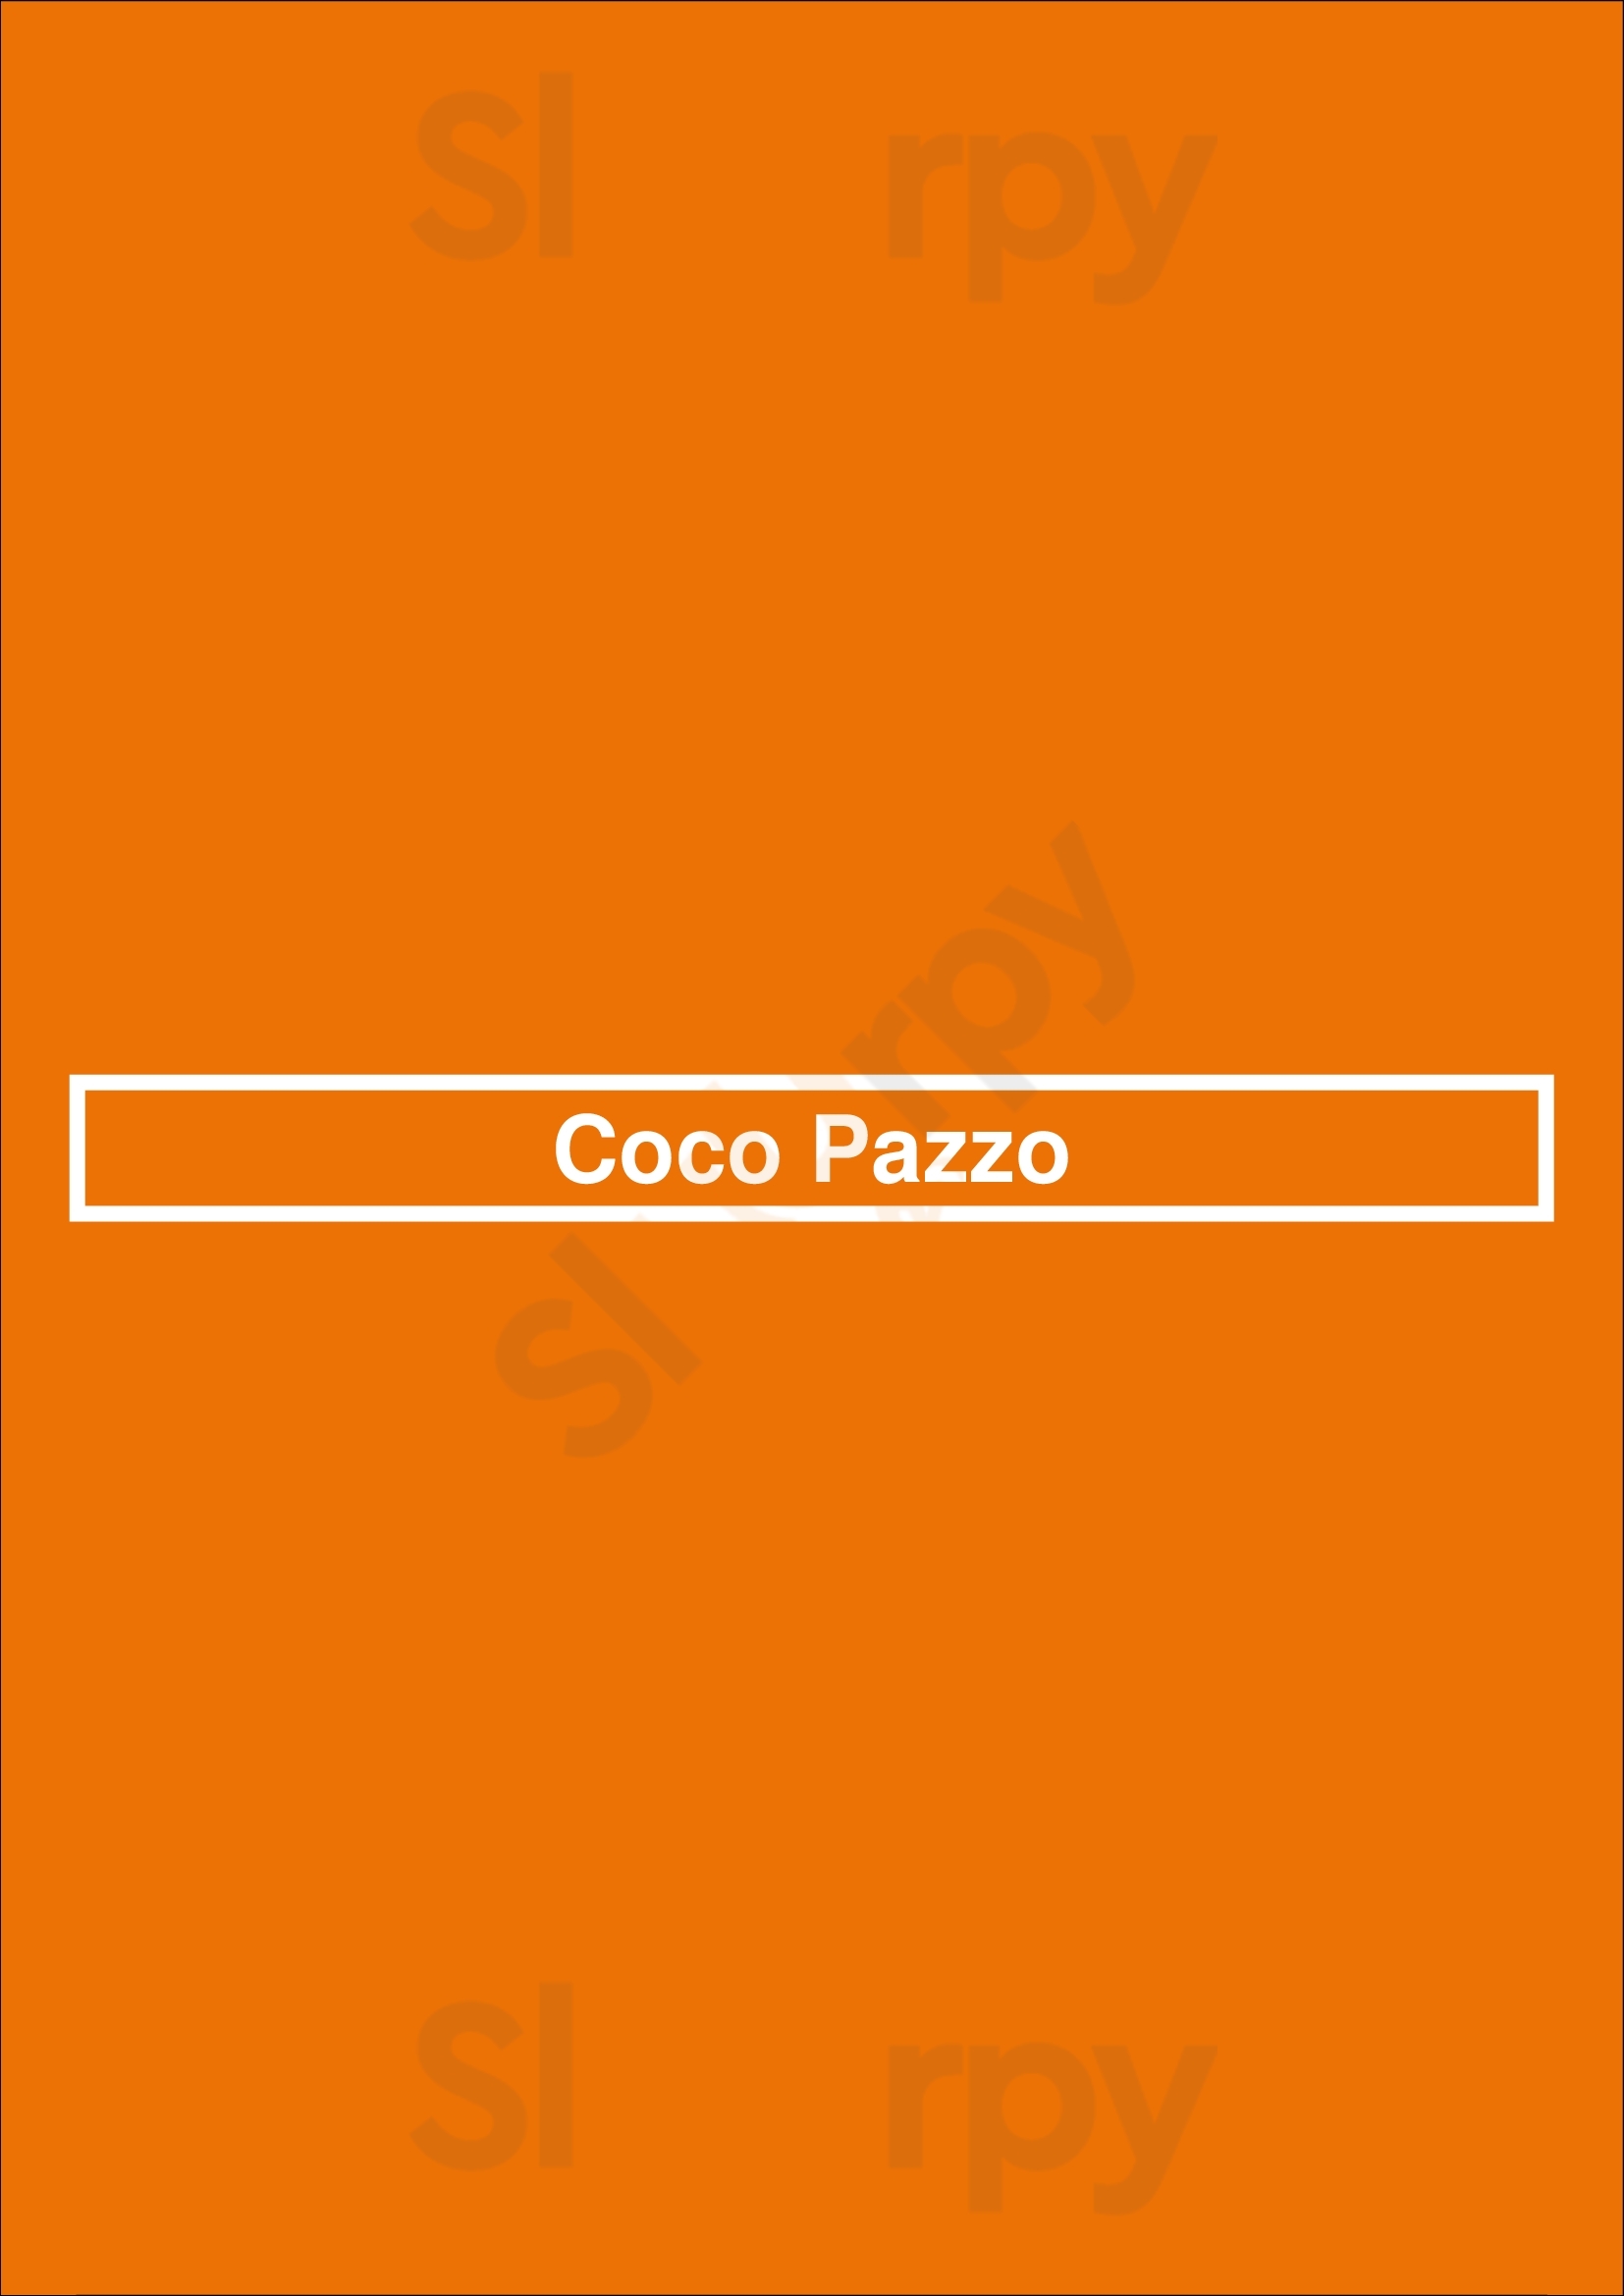 Coco Pazzo Chicago Menu - 1